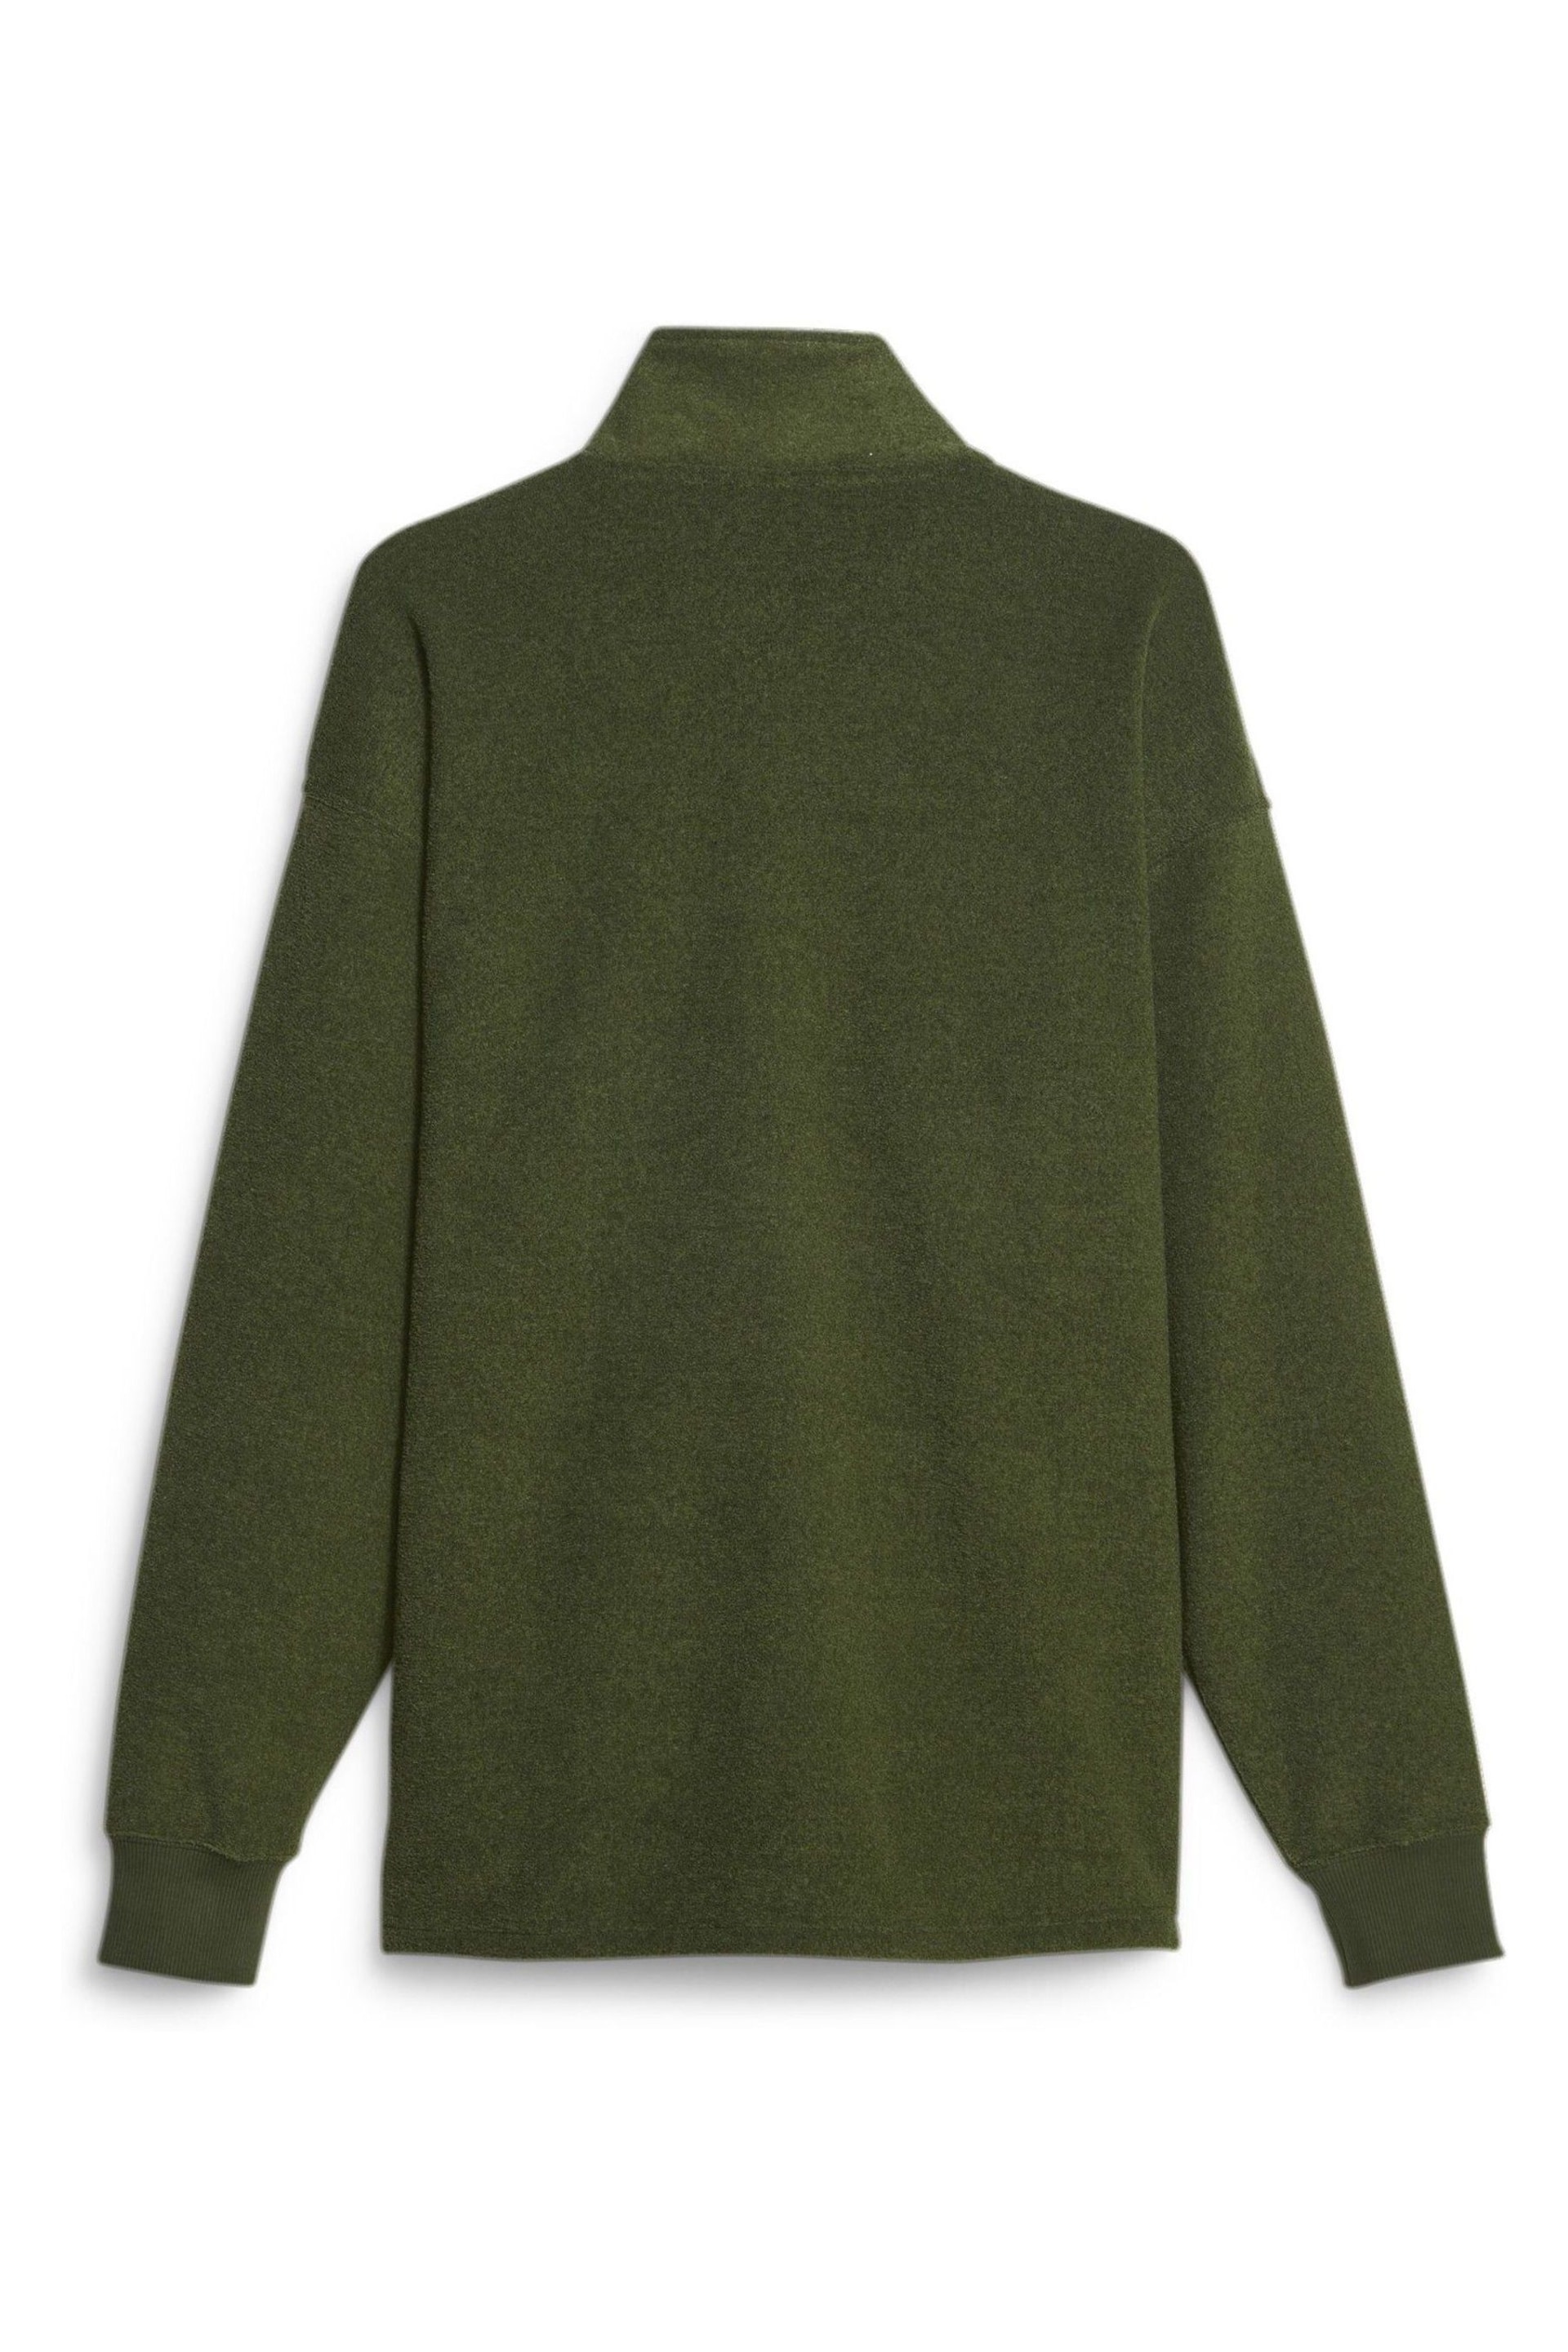 Puma Green Classics Mens Quarter-Zip Fleece - Image 7 of 7